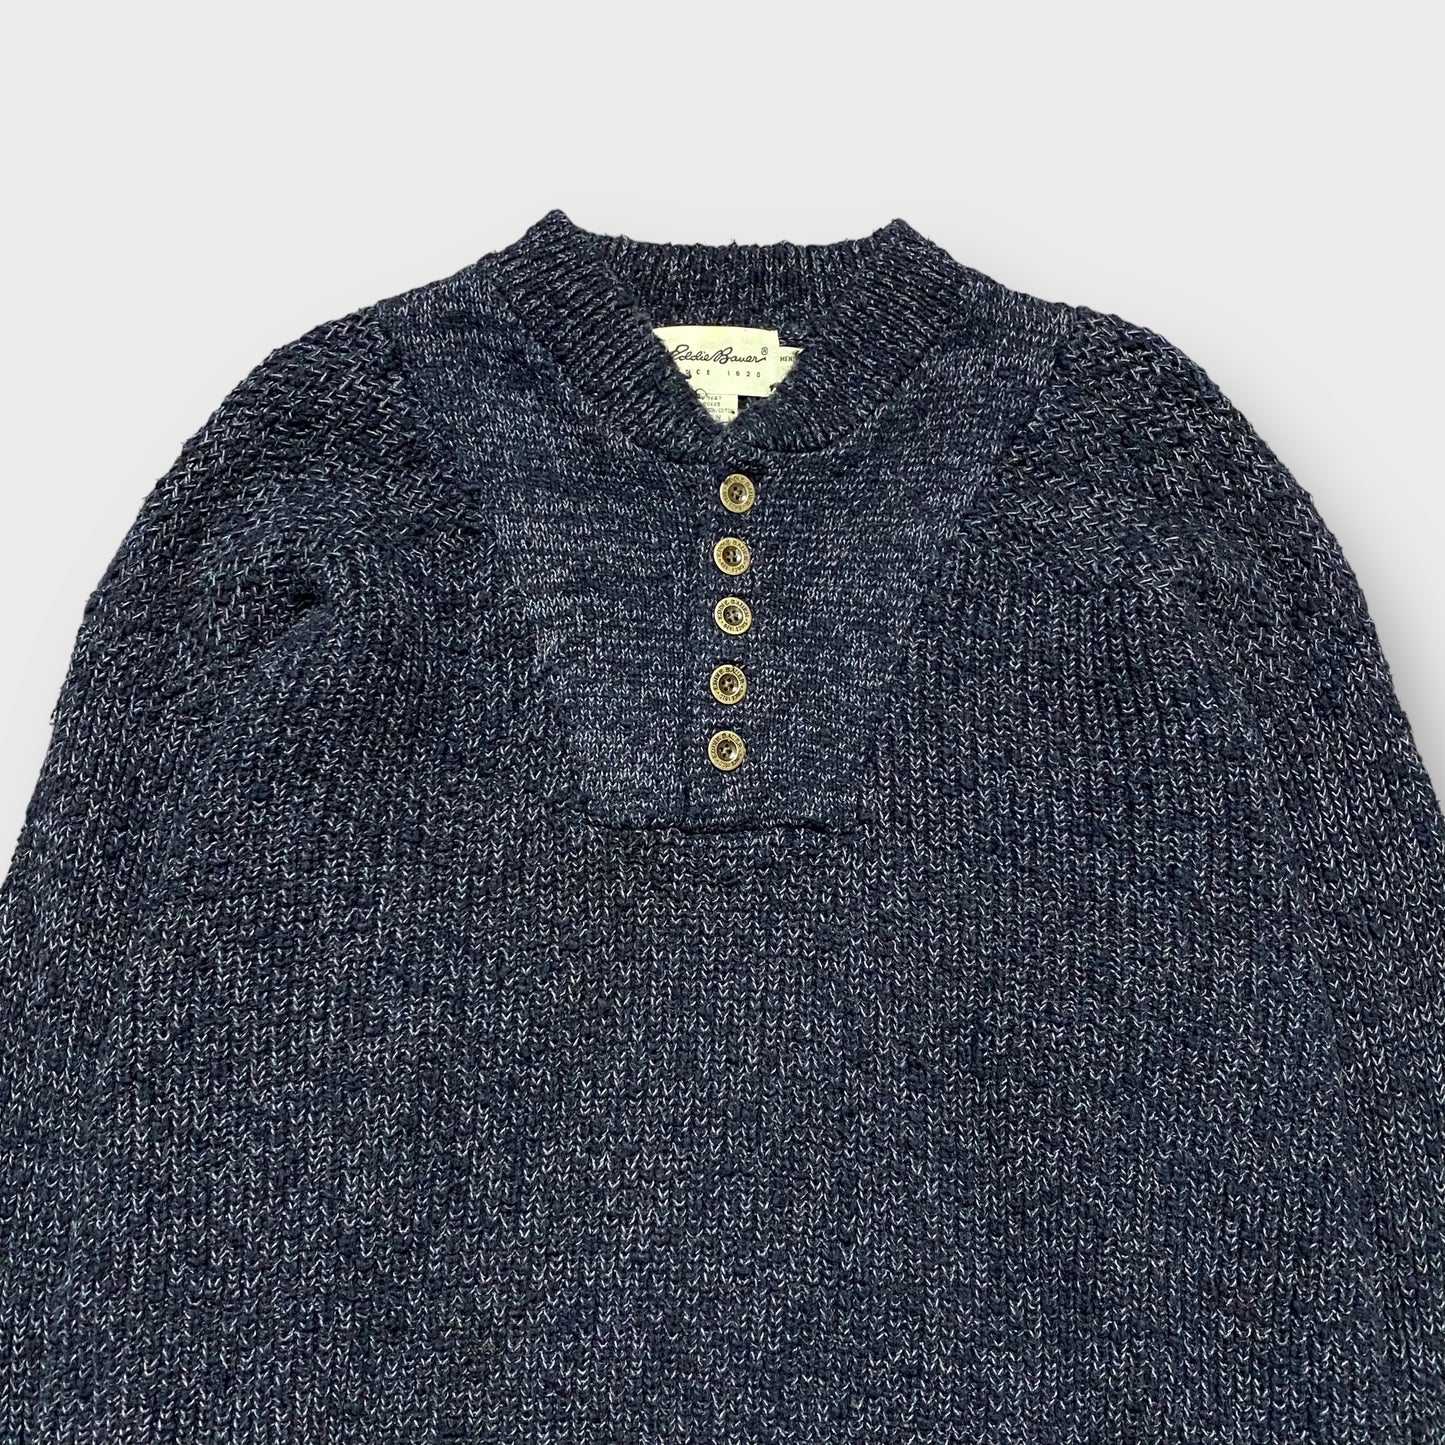 90's "Eddie Bauer" Henry neck knit sweater